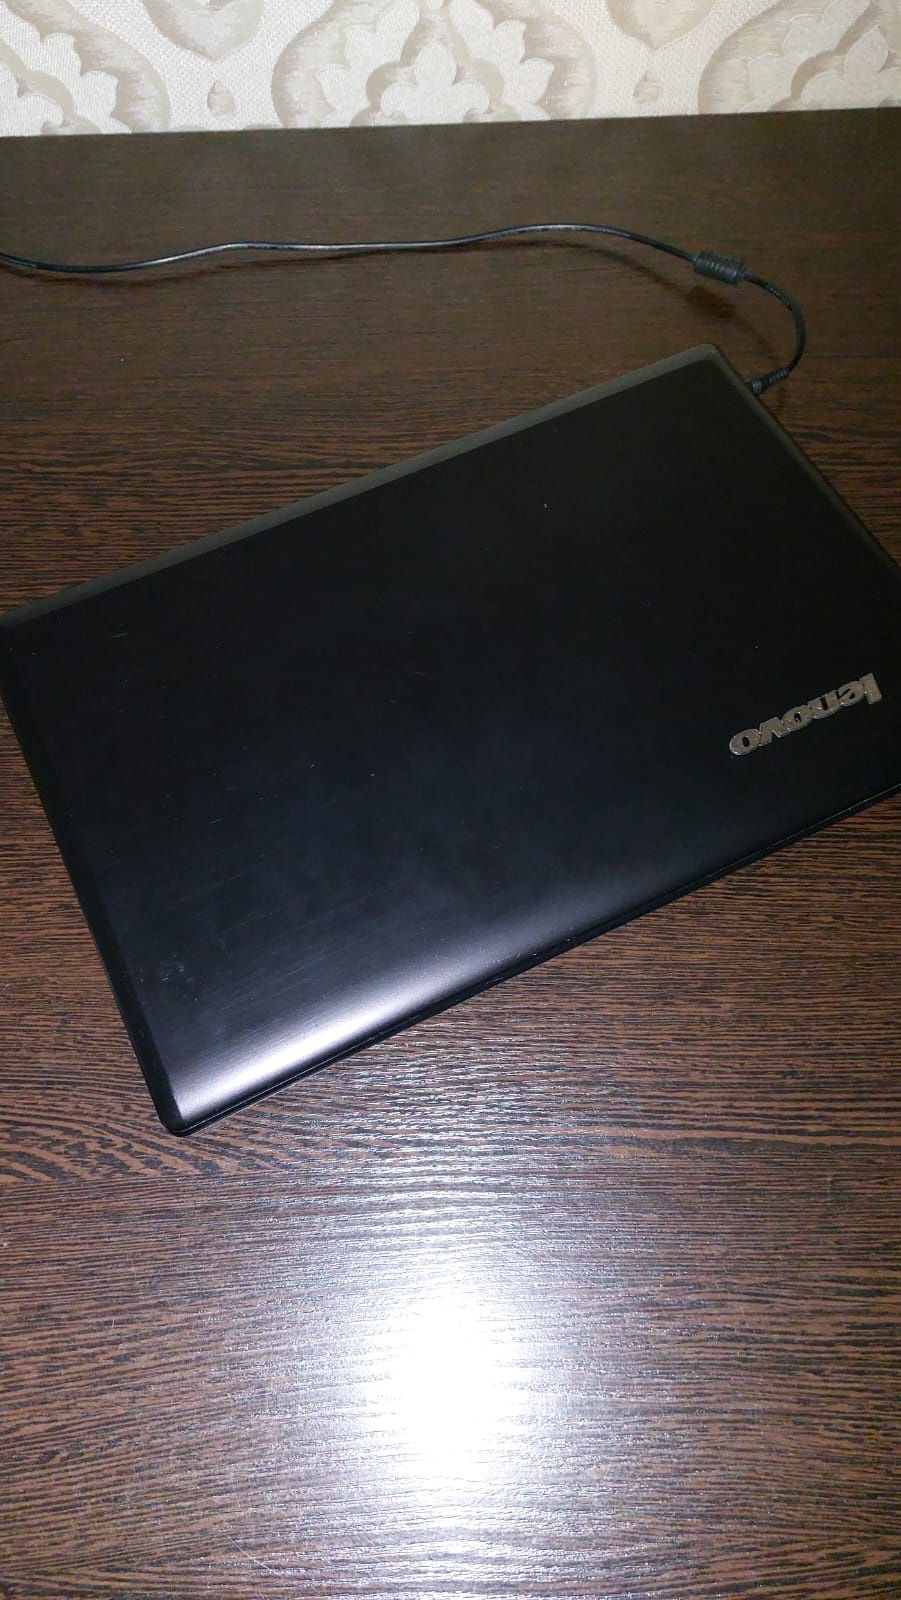 Продам ноутбук Lenovo G580